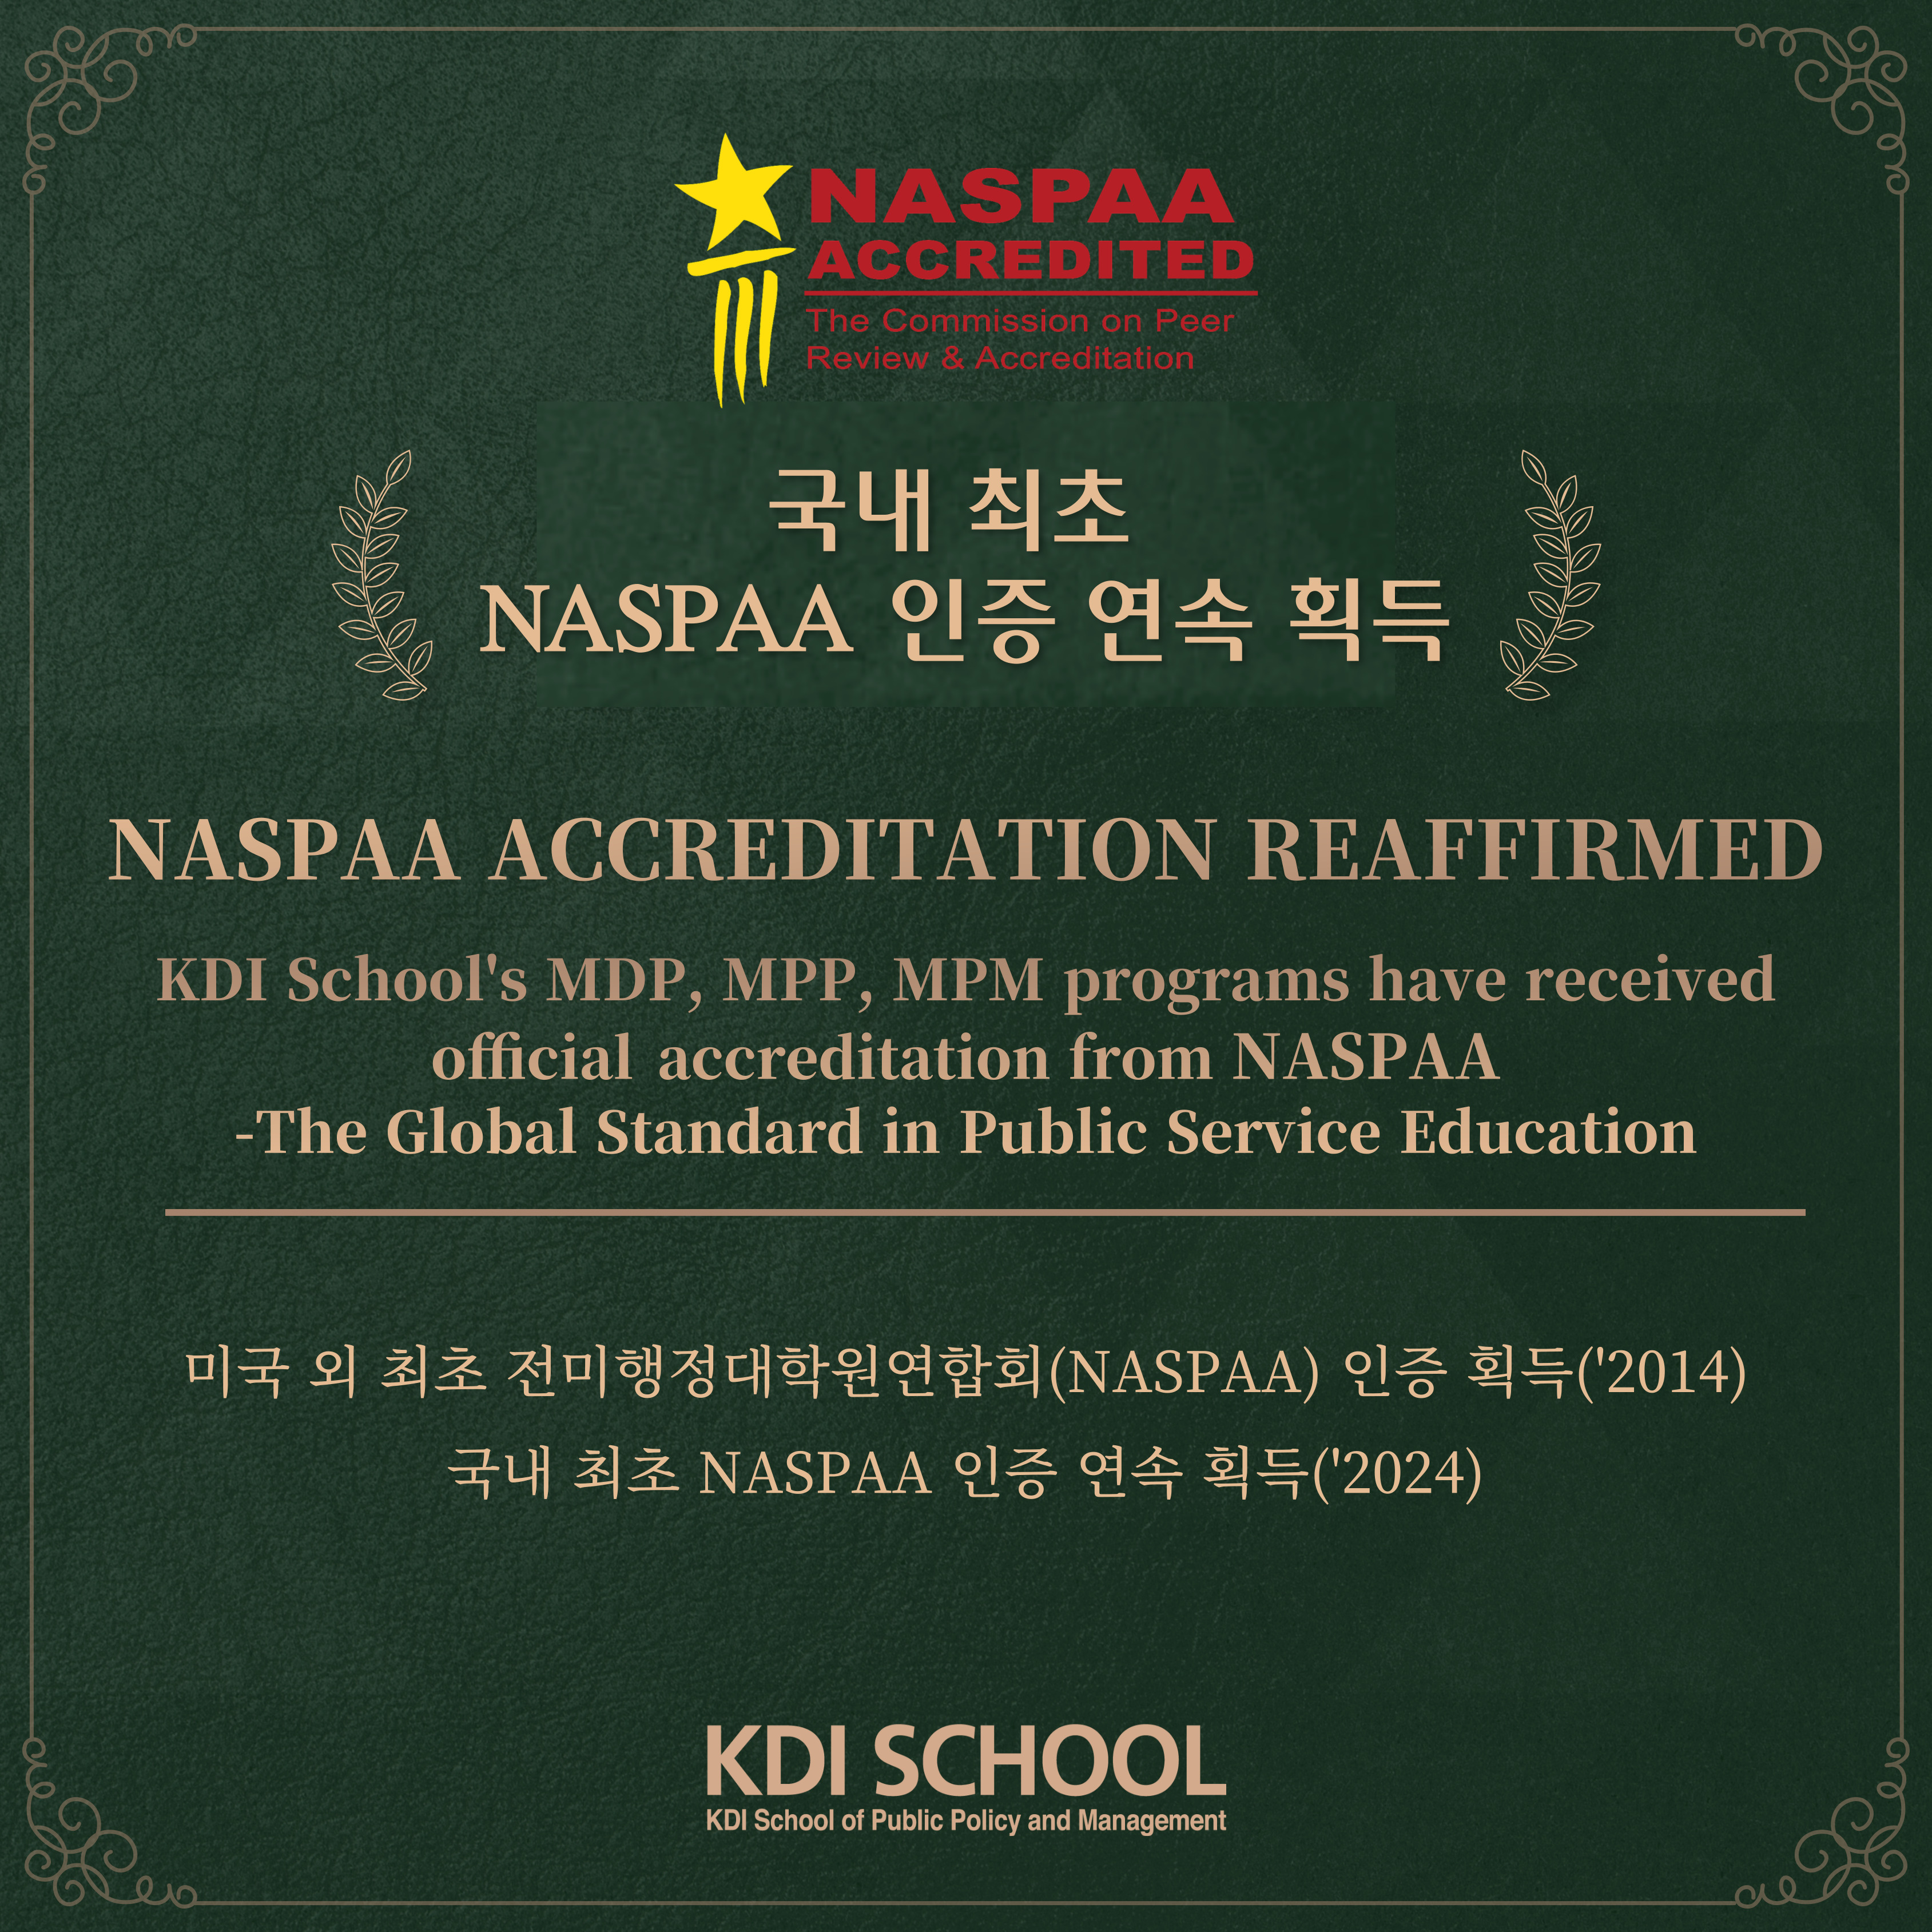 KDIS NASPAA 인증 연속 획득